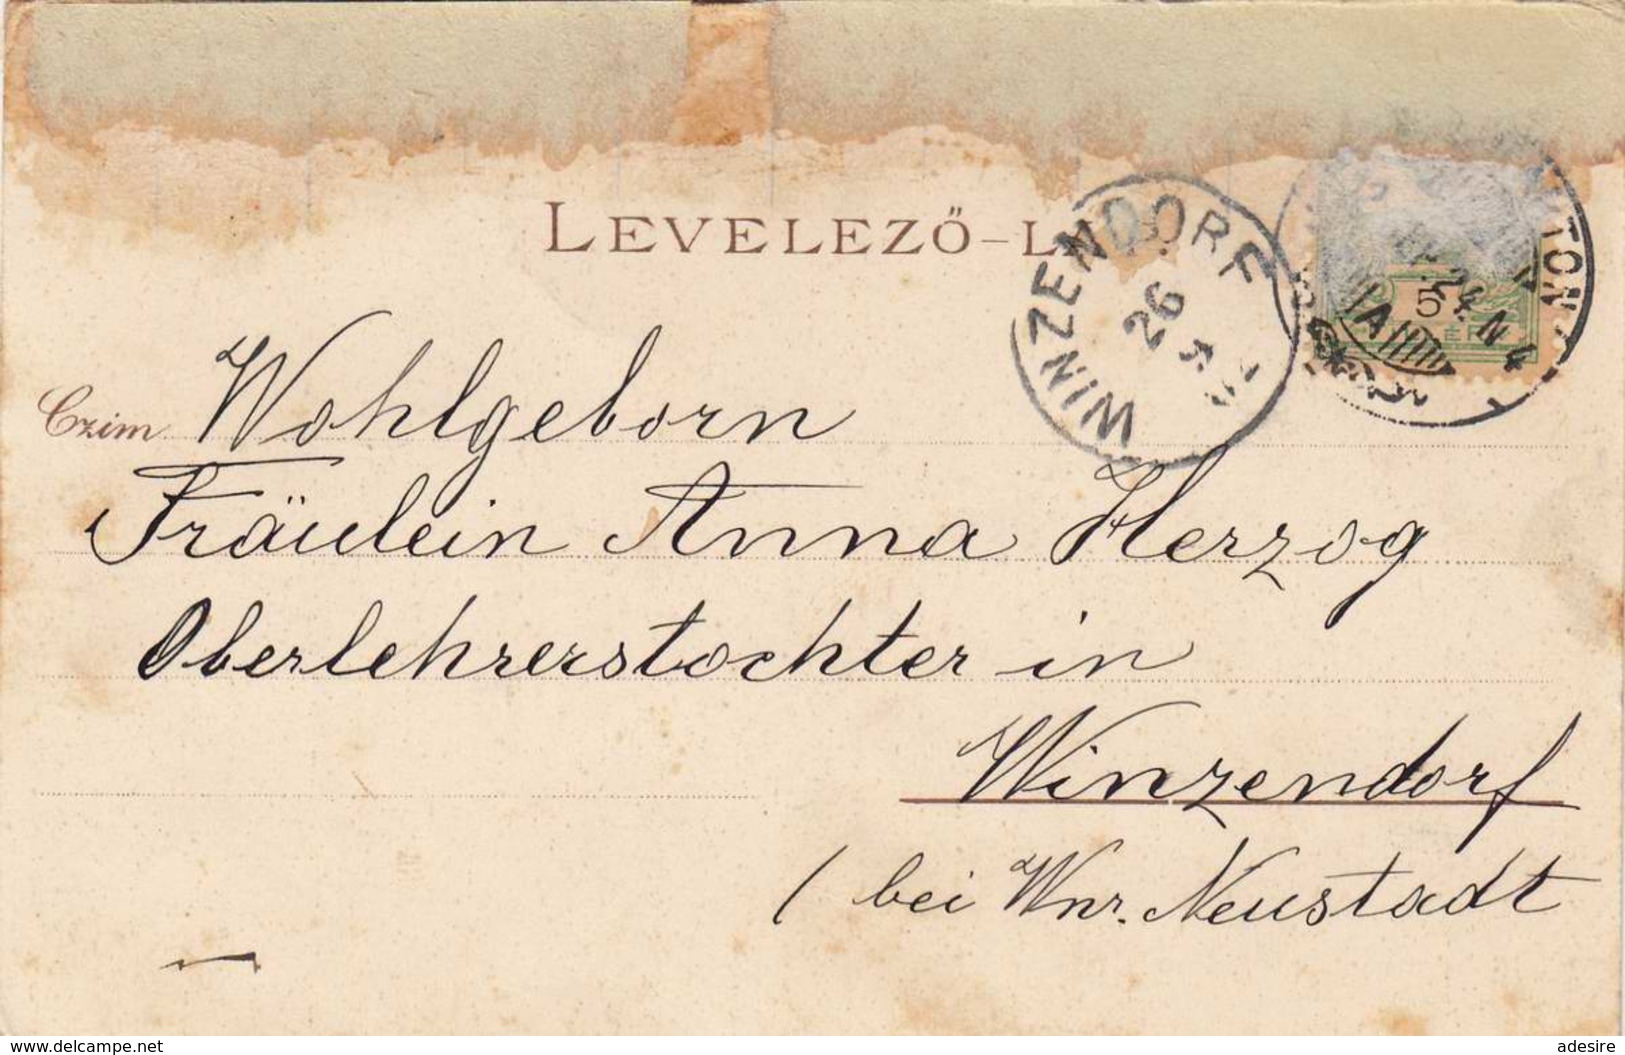 XISMARTON - EISENSTADT, Gel.1902 Von Xismarton Nach Winzendorf, Sehr Seltene Karte, Klebespuren Auf Rückseite - Eisenstadt